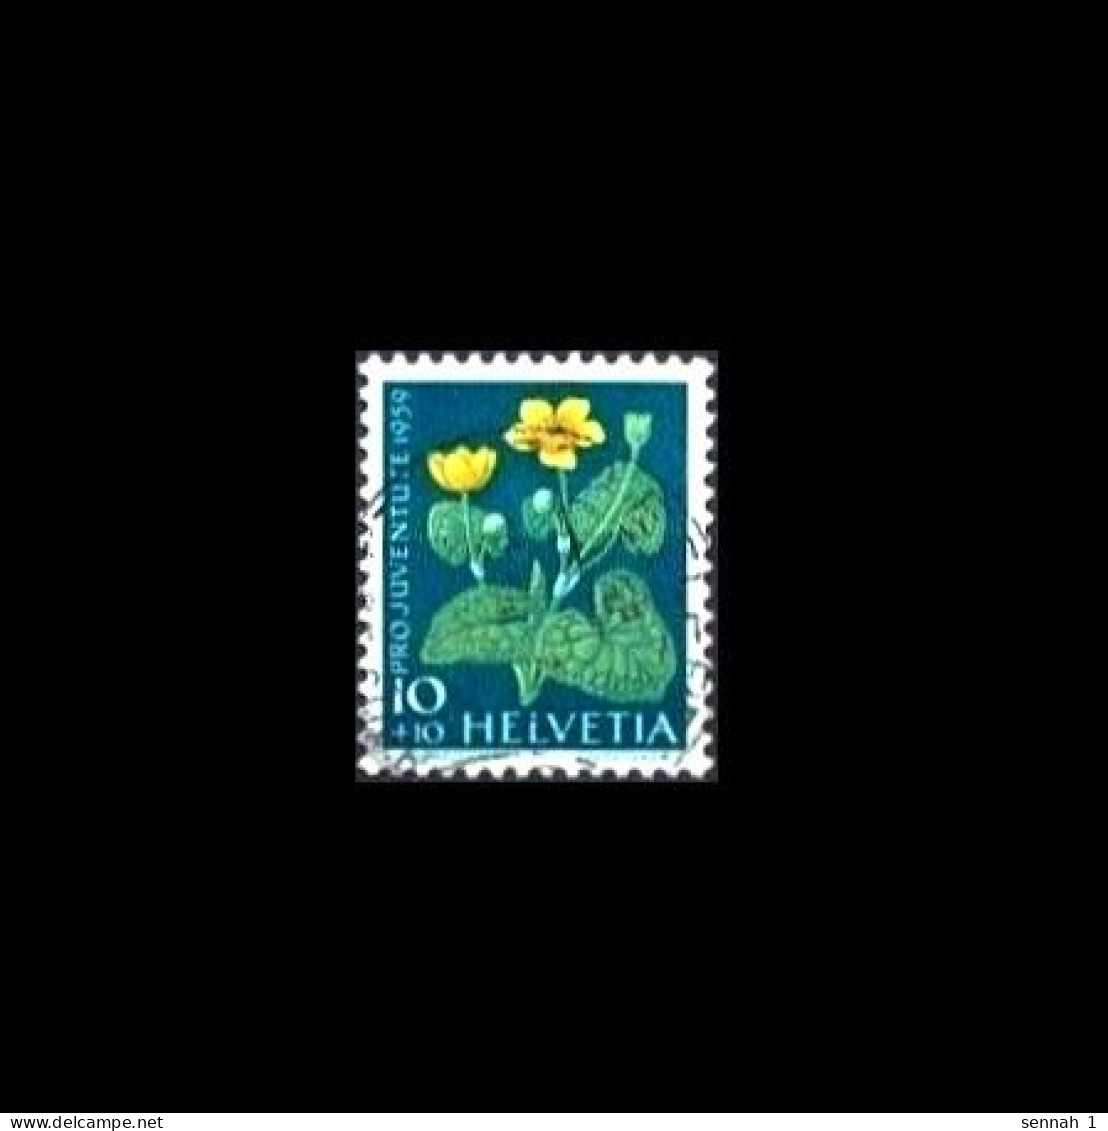 Schweiz / Switzerland: 'Pro Juventute – Sumpf-Dotterblume, 1959' / 'Marsh-marigold', Mi. 688; Yv. 635; Zum. J179 Oo - Oblitérés